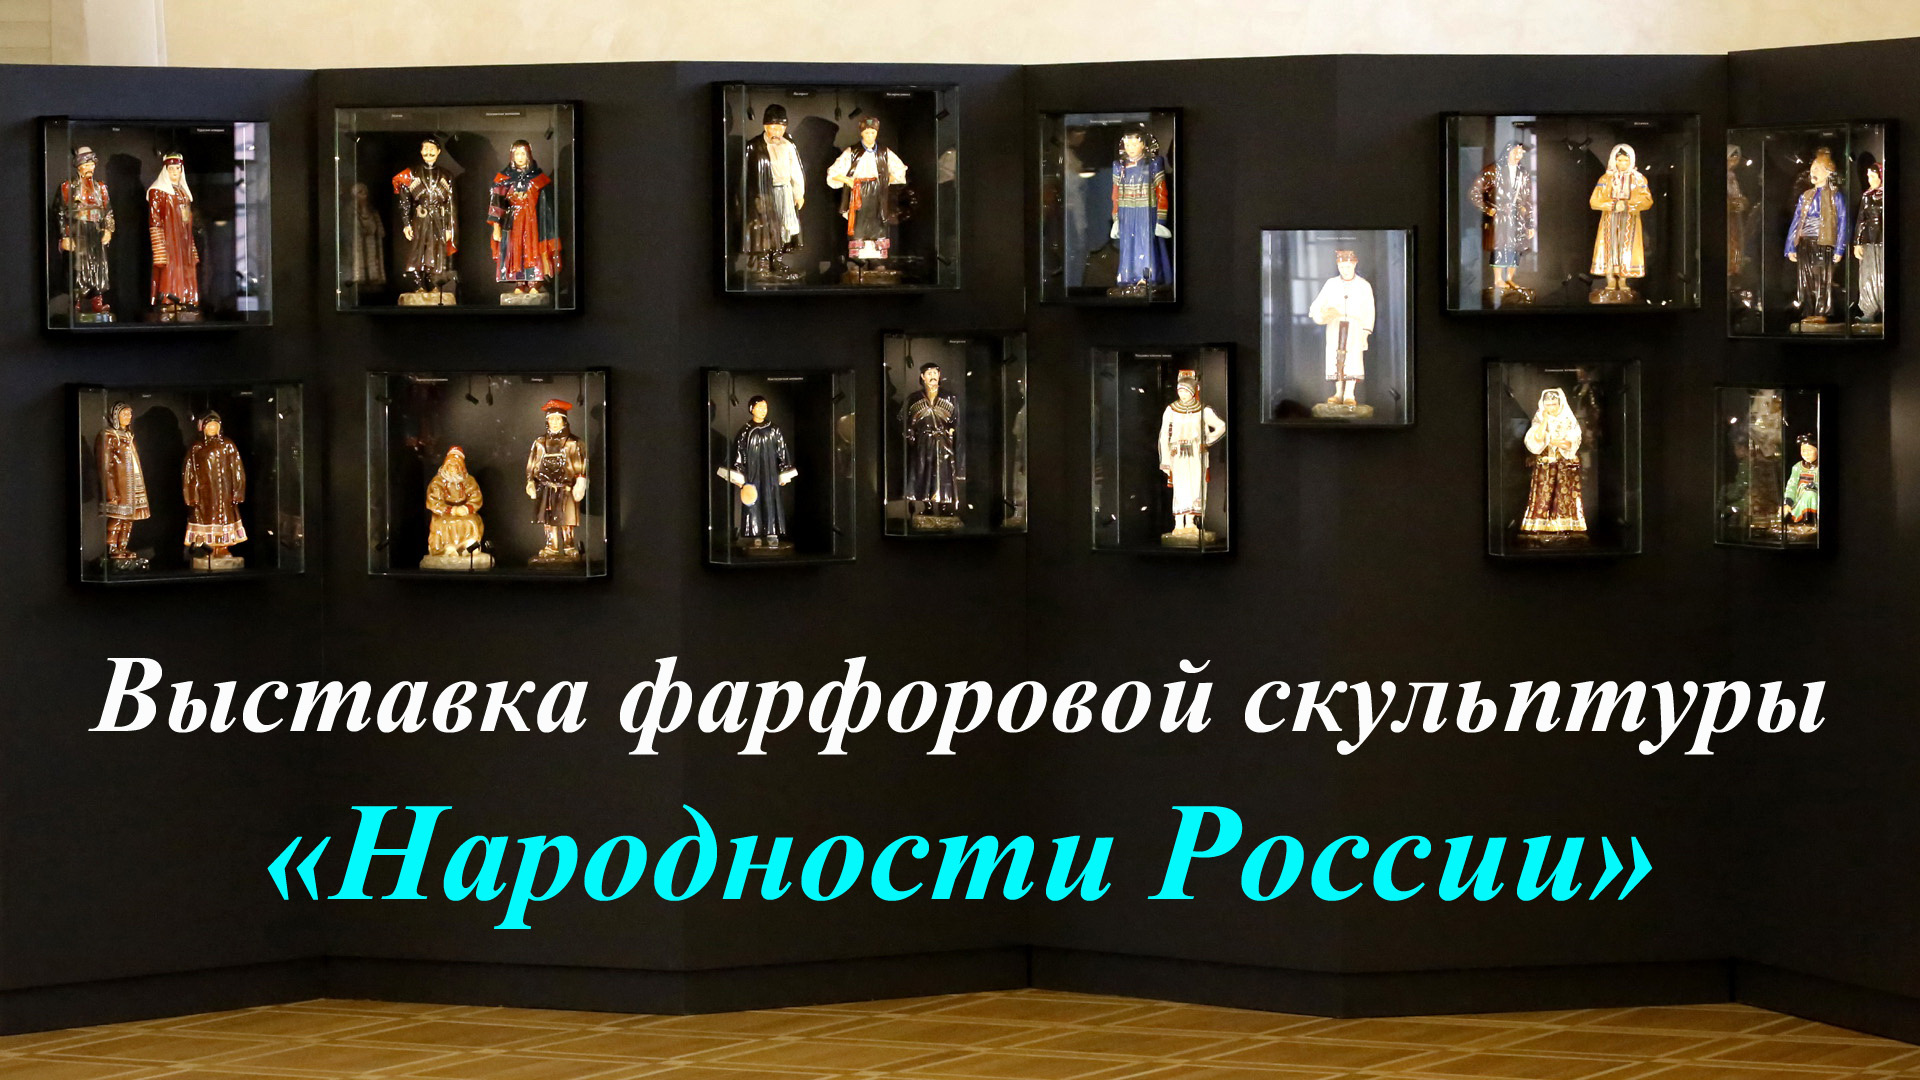 Выставка фарфоровой скульптуры «Народности России»